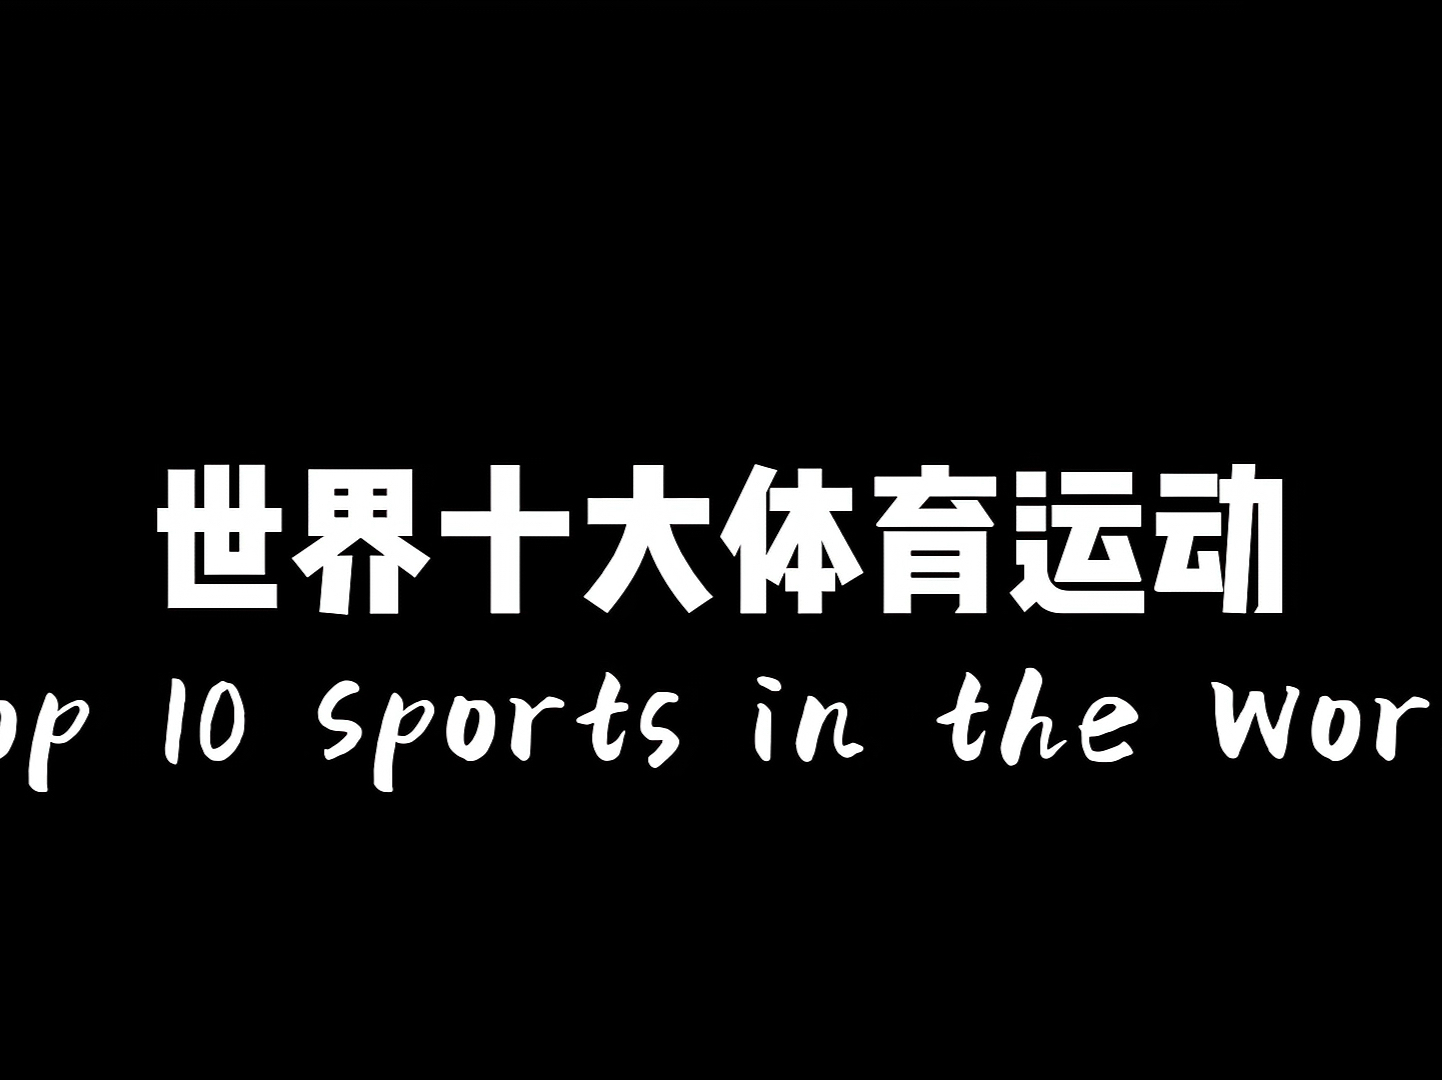 世界十大体育运动。第一运动毫无争议。